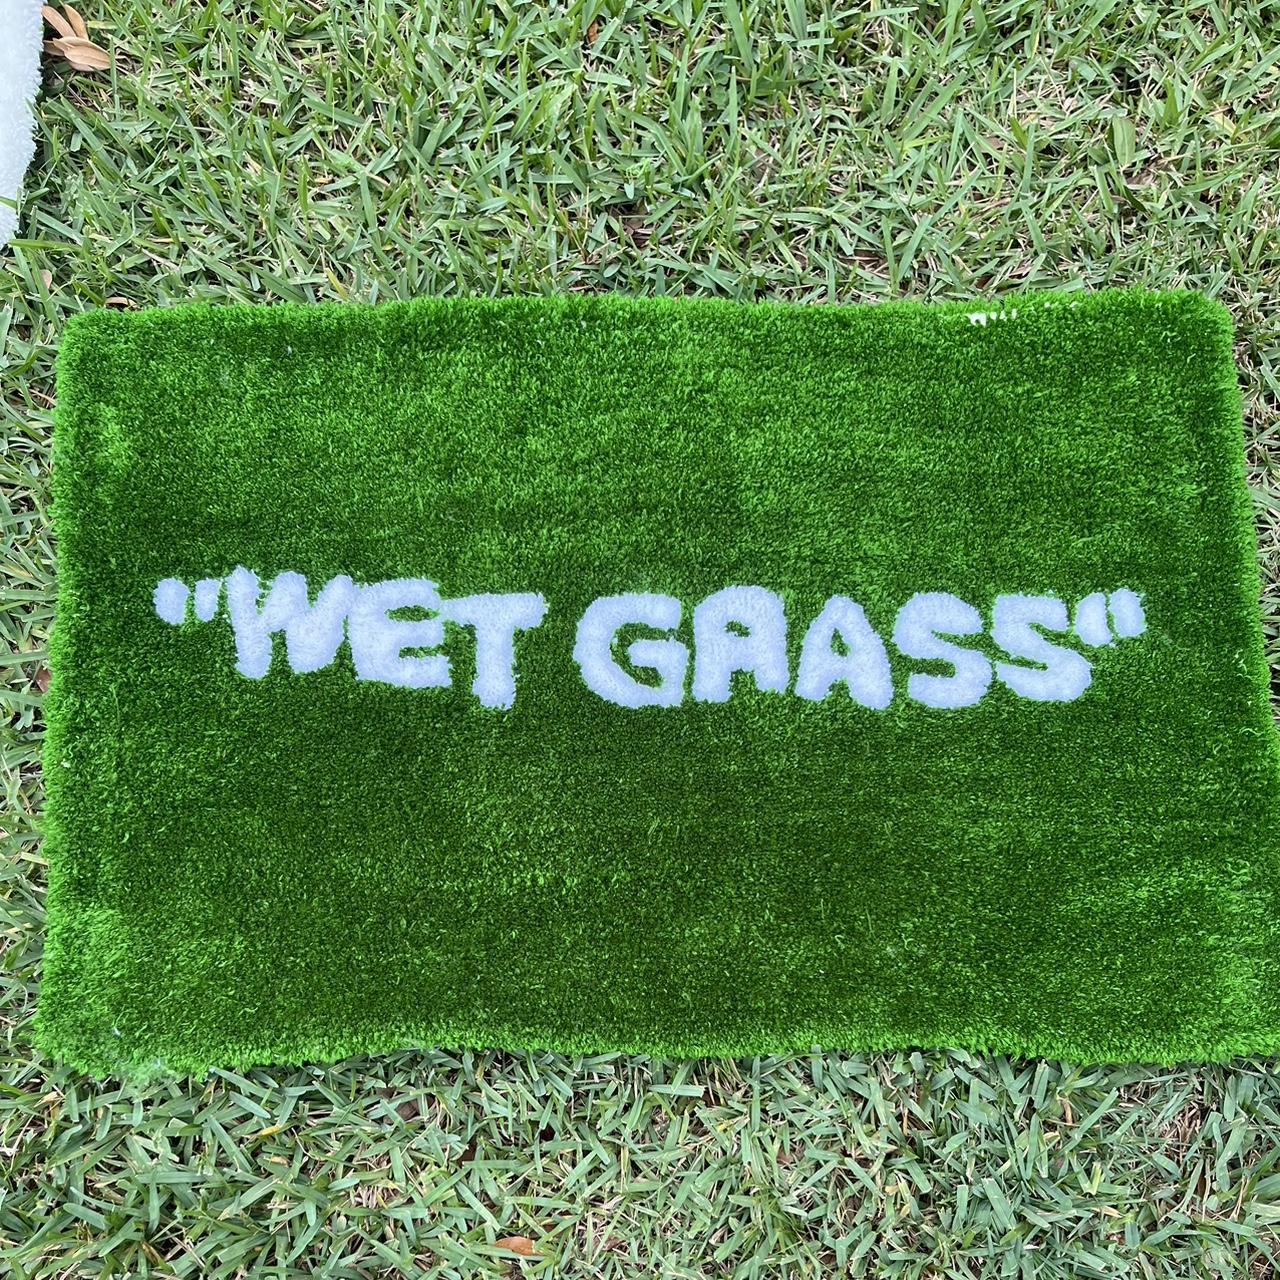 Wet Grass Rug,Wet Grass, Wet-Grass Rug, Green Rug,... - Depop